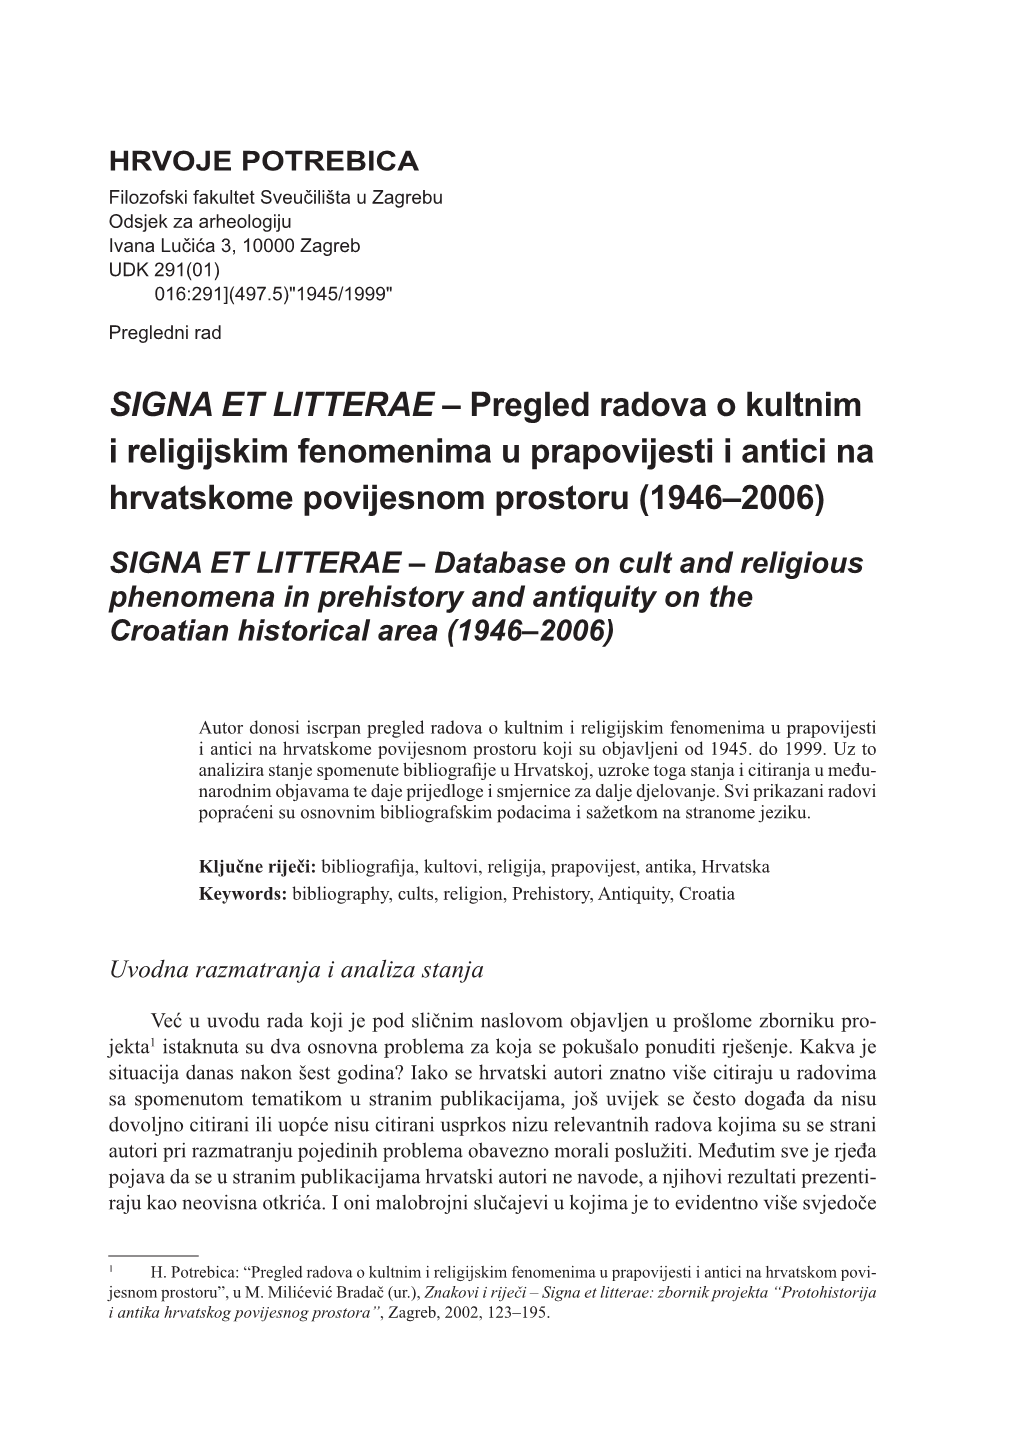 Pregled Radova O Kultnim I Religijskim Fenomenima U Prapovijesti I Antici Na Hrvatskome Povijesnom Prostoru (1946–2006)